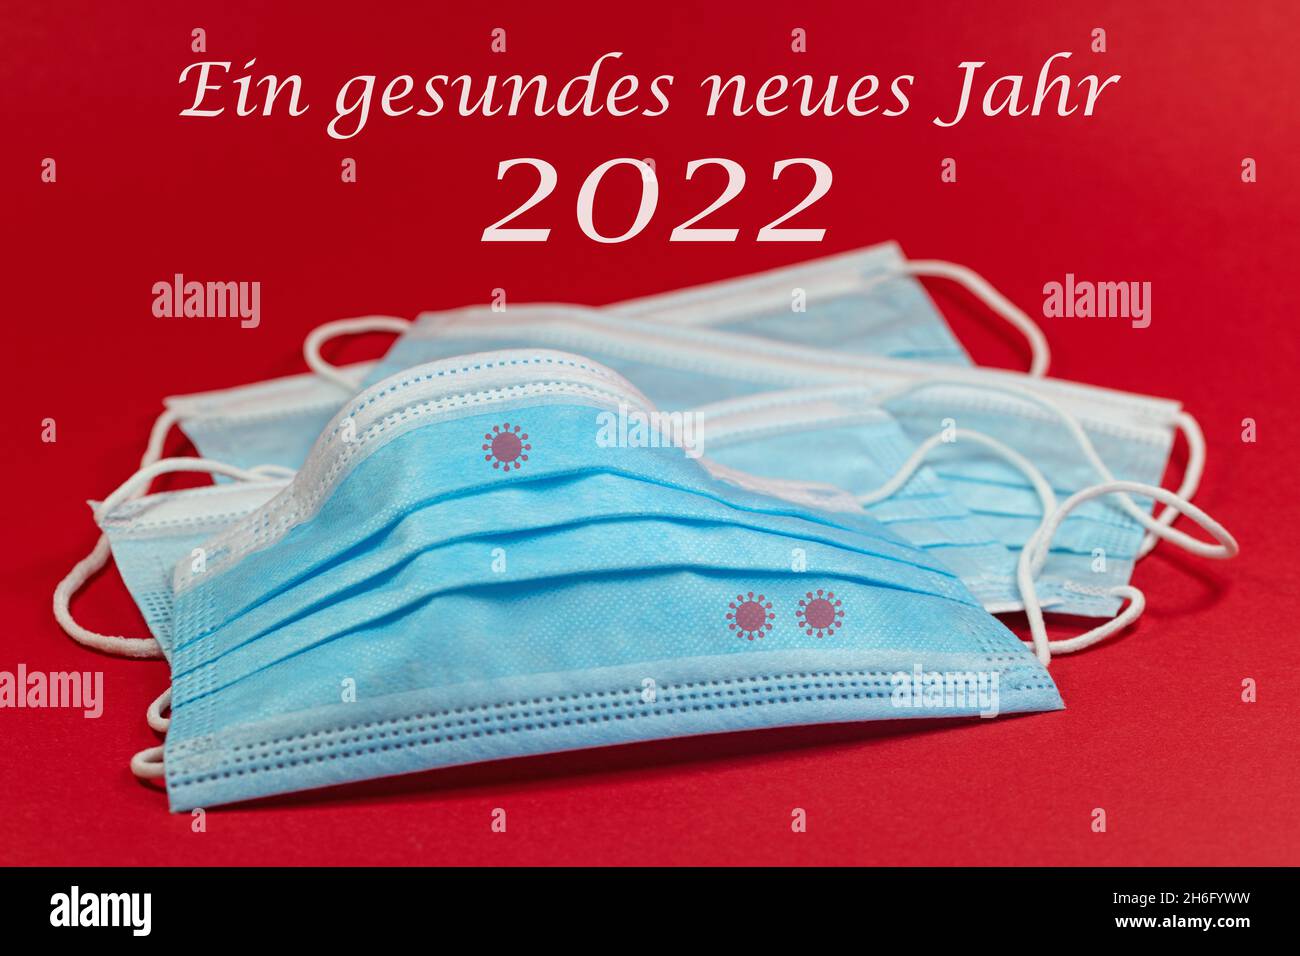 Masques buccaux et nasaux et texte 'Ein gesundes neues Jahr 2022', traduction 'Happy New Year 2022' Banque D'Images